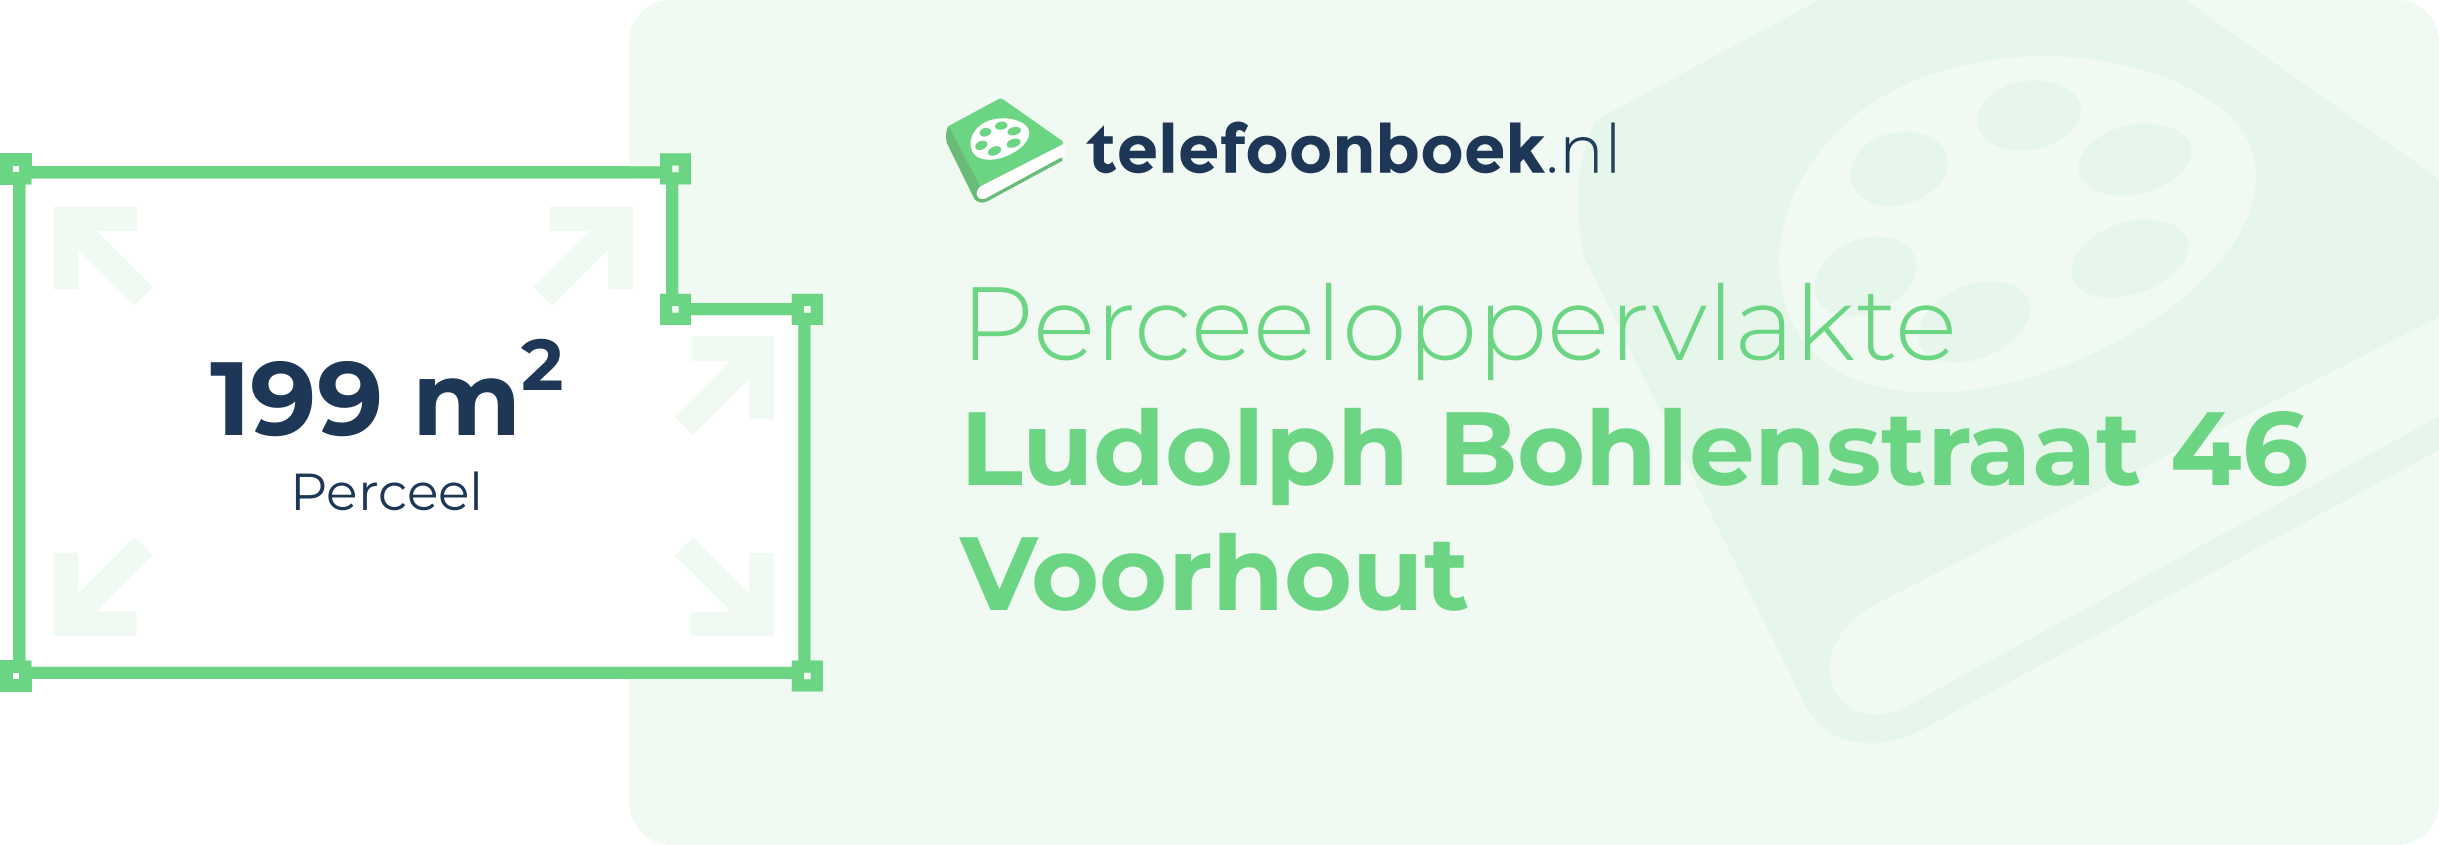 Perceeloppervlakte Ludolph Bohlenstraat 46 Voorhout